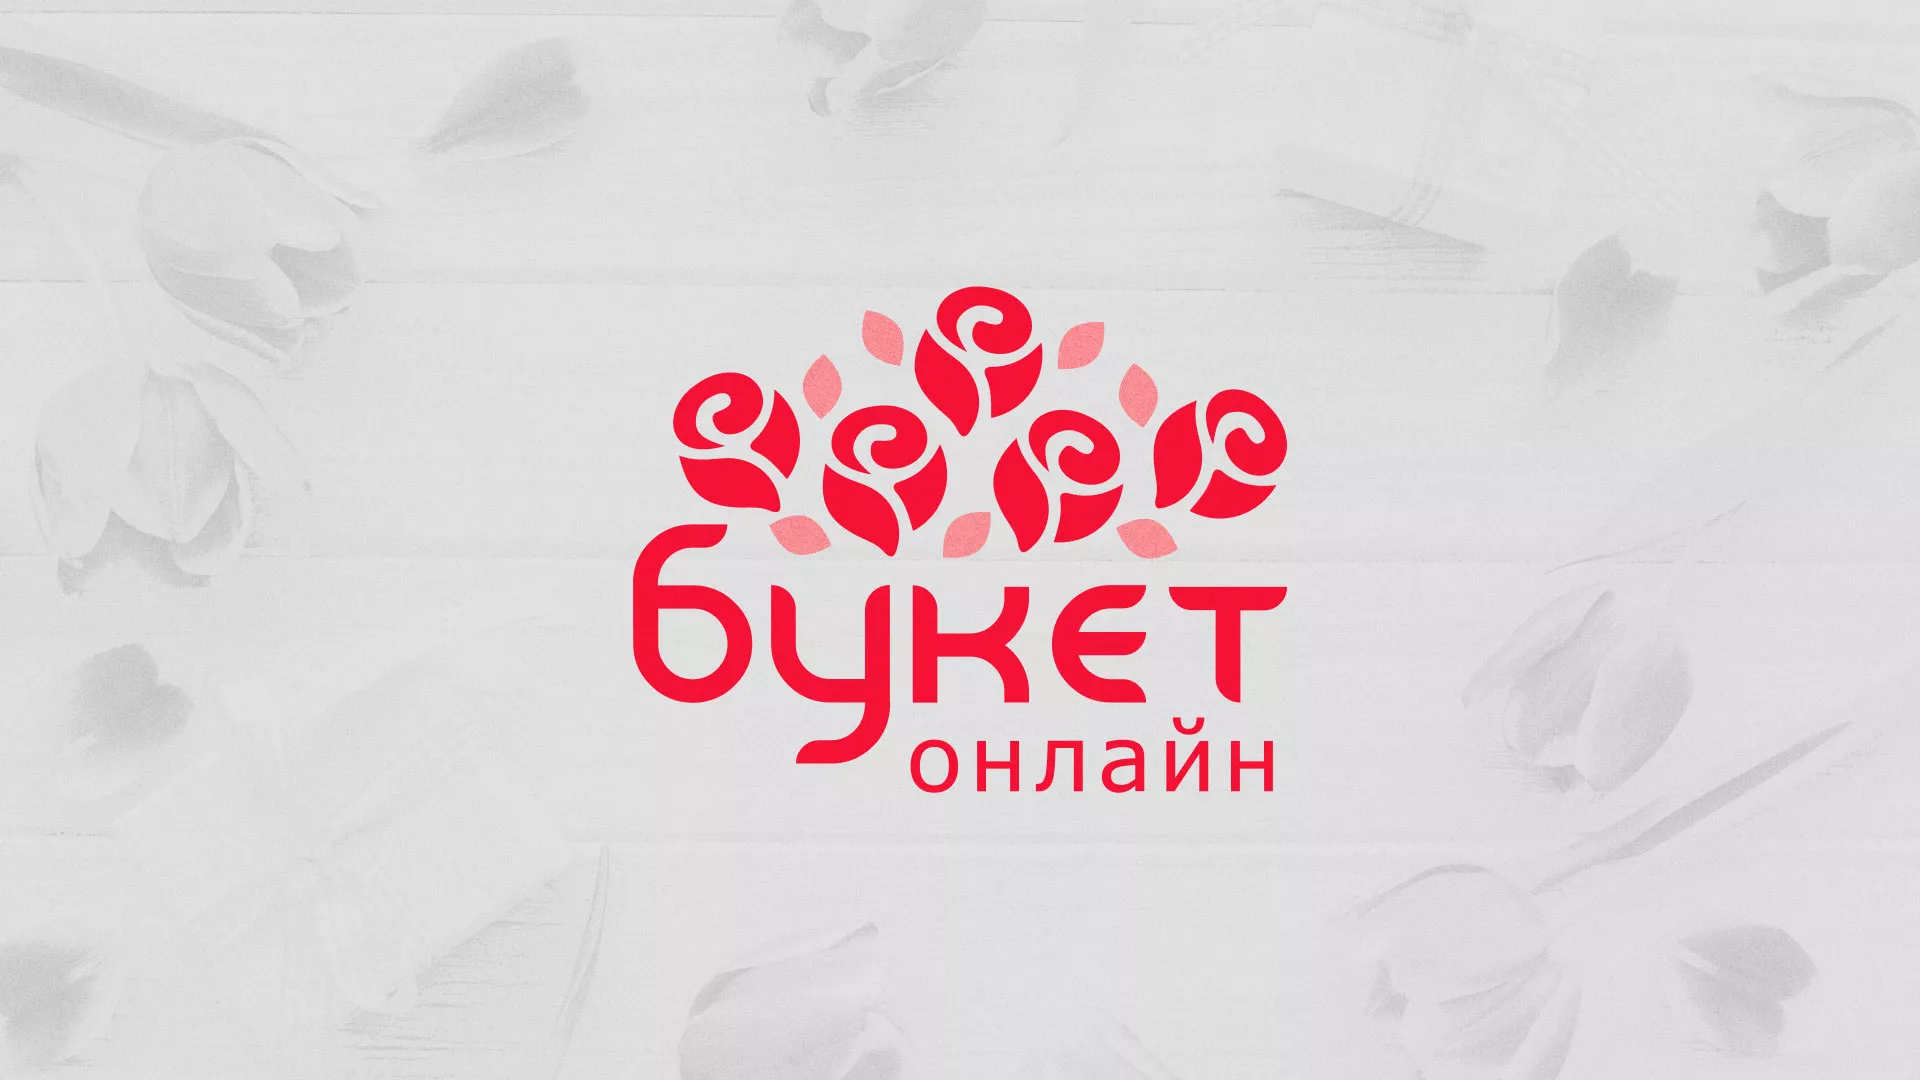 Создание интернет-магазина «Букет-онлайн» по цветам в Новоалександровске